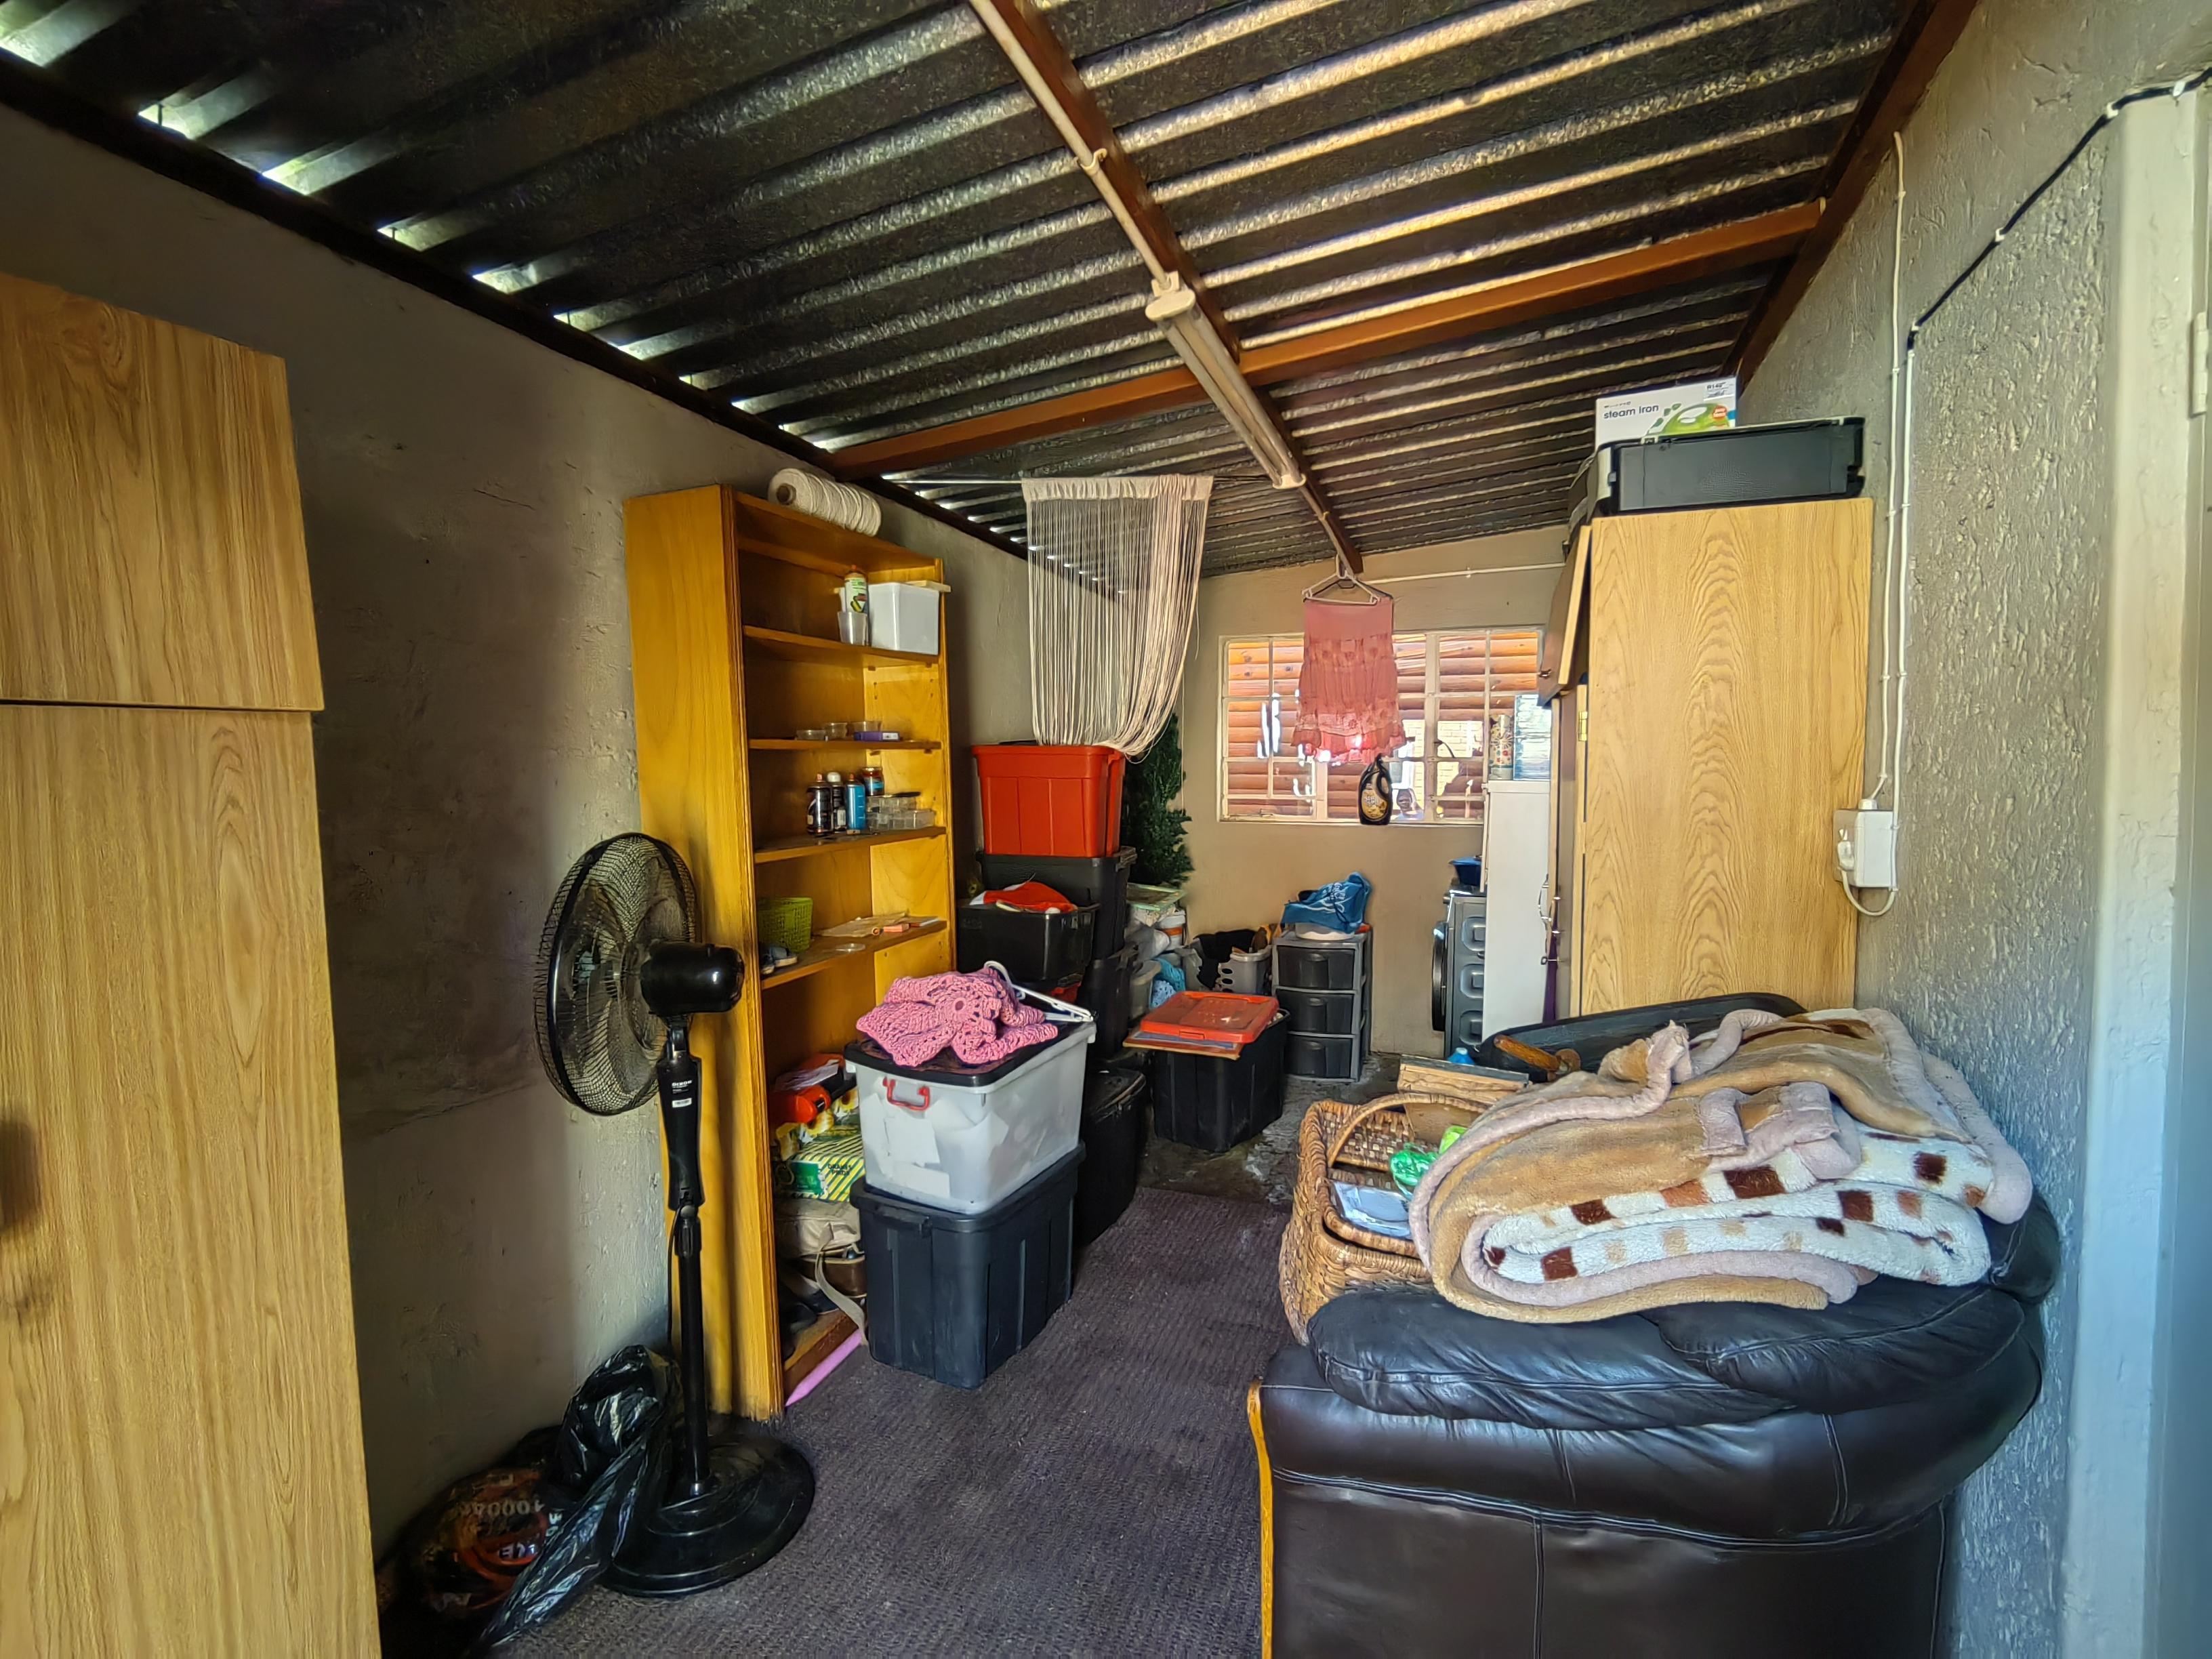 To Let 1 Bedroom Property for Rent in Waverley Gauteng